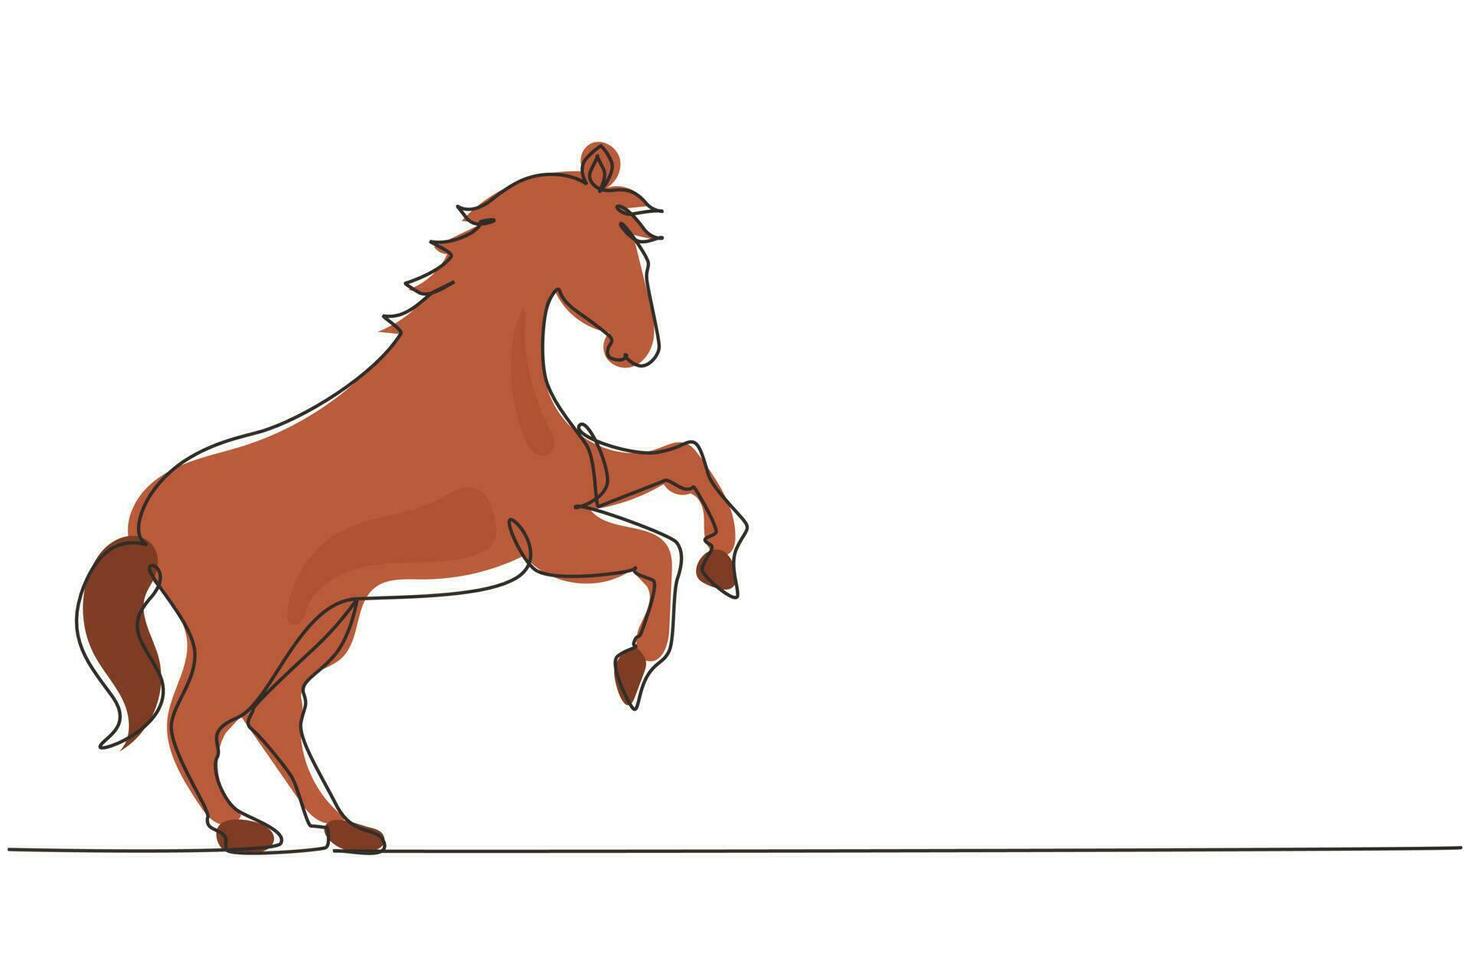 un solo dibujo de una línea orgulloso caballo blanco camina con gracia con su pezuña delantera hacia adelante. mustang salvaje galopa en la naturaleza libre. mascota animal fuerte. vector gráfico de diseño de dibujo de línea continua moderna